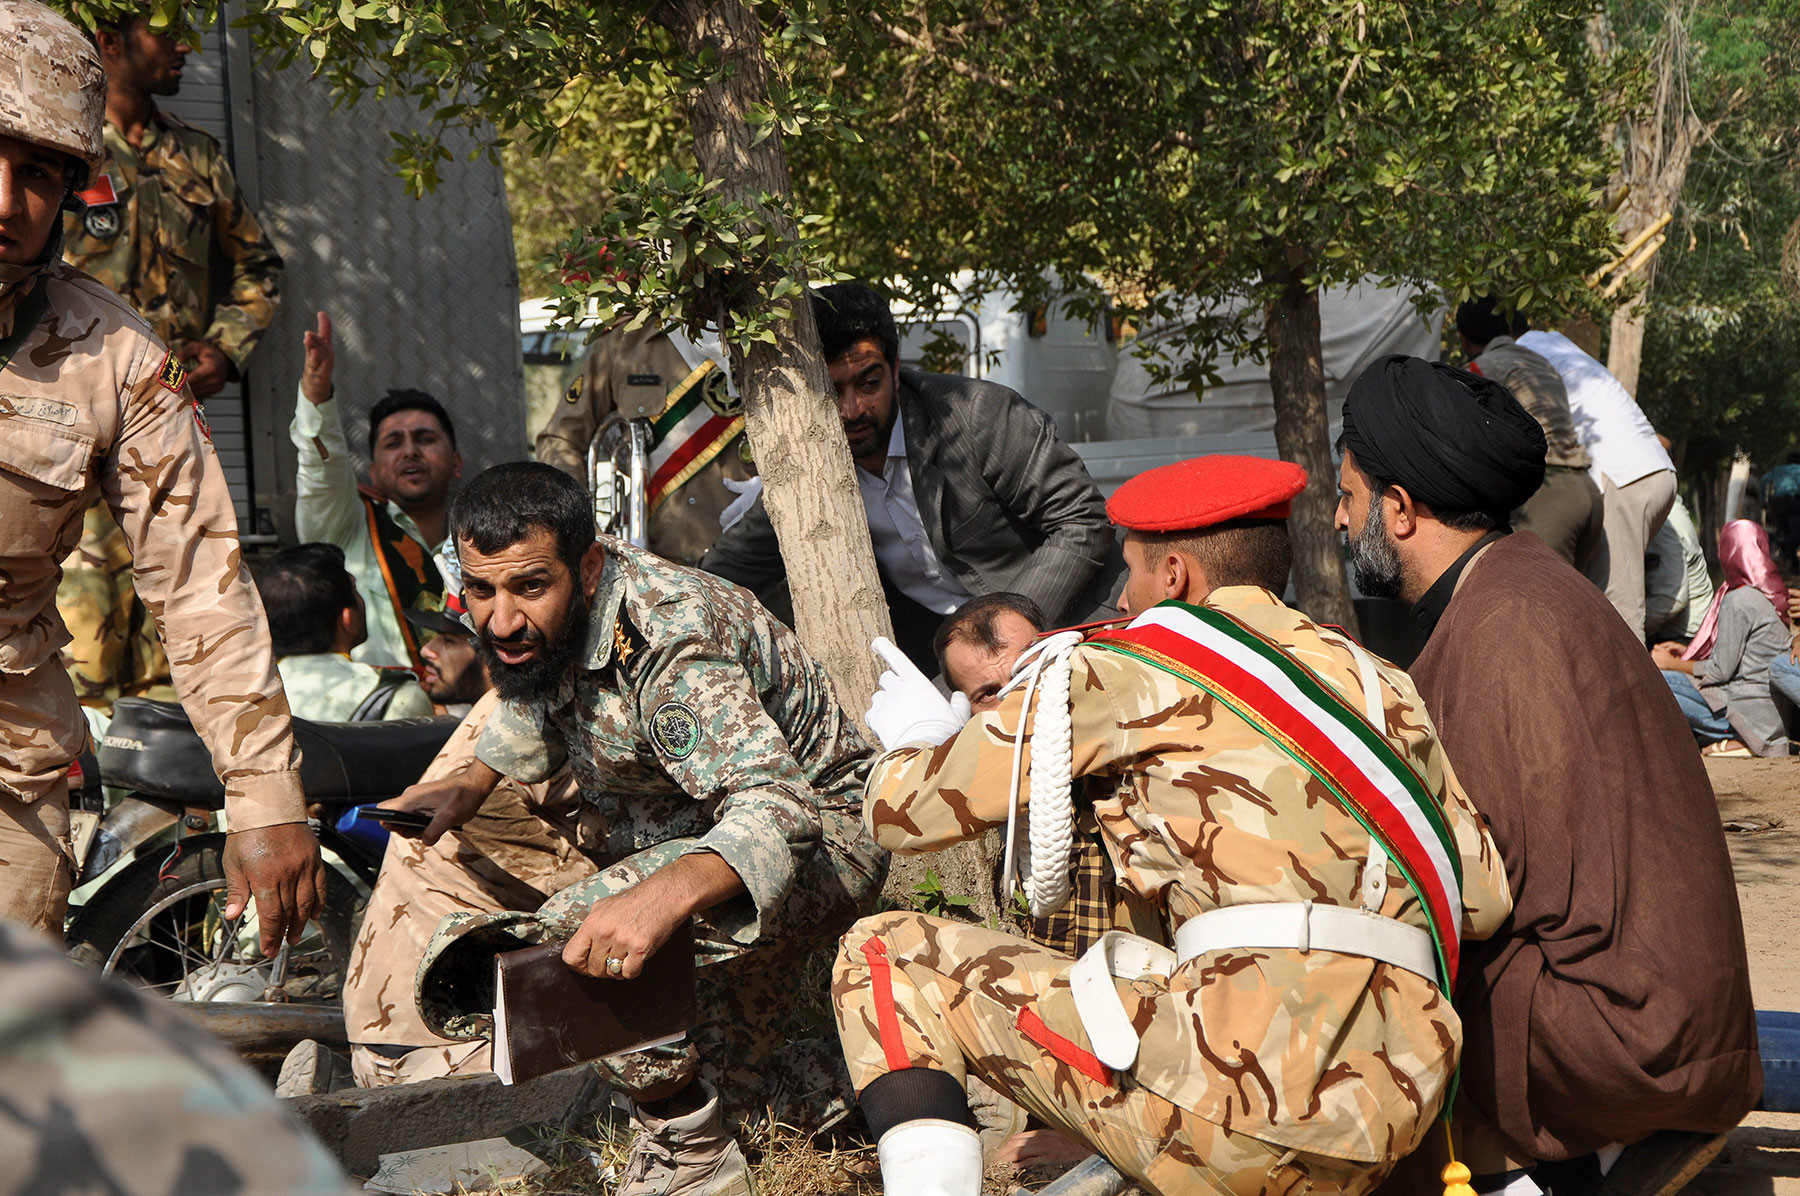 Иранские военнослужащие и мирные жители пытаются укрыться от стрельбы во время парада в городе Ахваз. Фото: © AP Photo/ISNA, Behrad Ghasemi